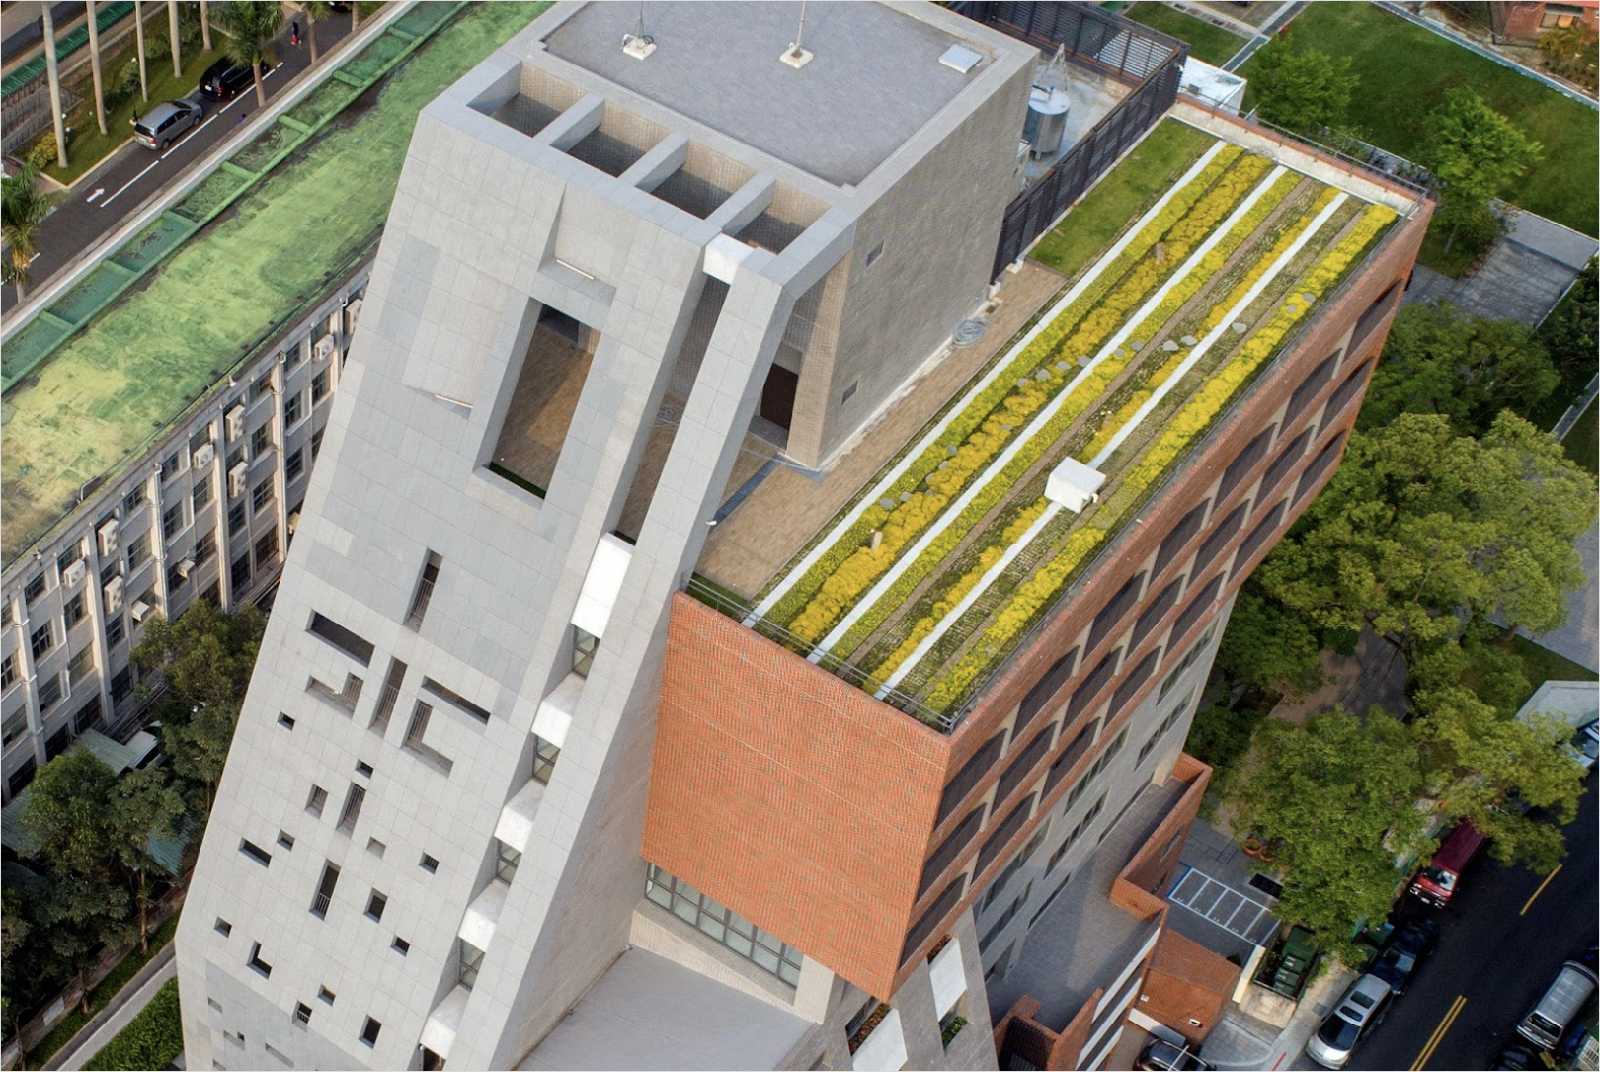 伯大尼少兒家園-綠屋頂-節能減碳-景觀-園藝-建築-綠化-療癒-熱島效應-降溫-城市規劃-城市景觀-屋頂花園